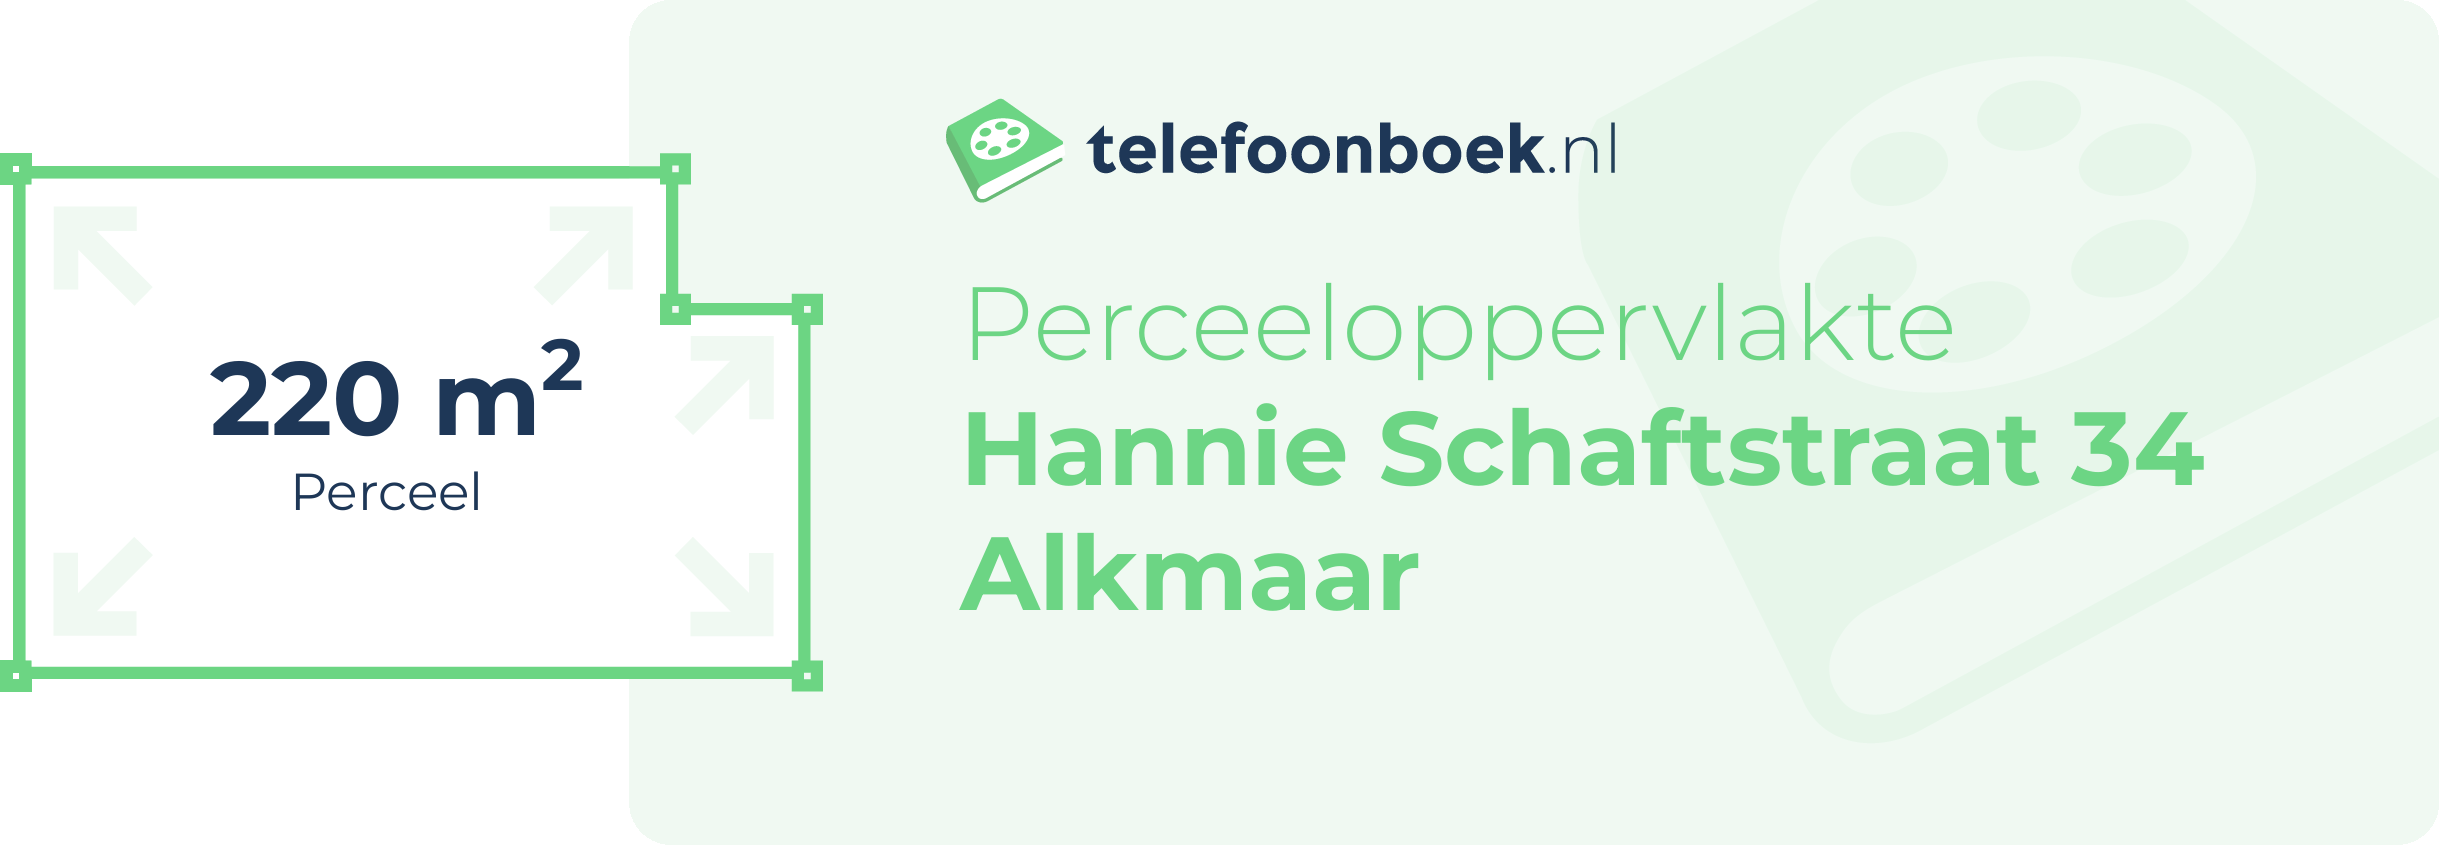 Perceeloppervlakte Hannie Schaftstraat 34 Alkmaar